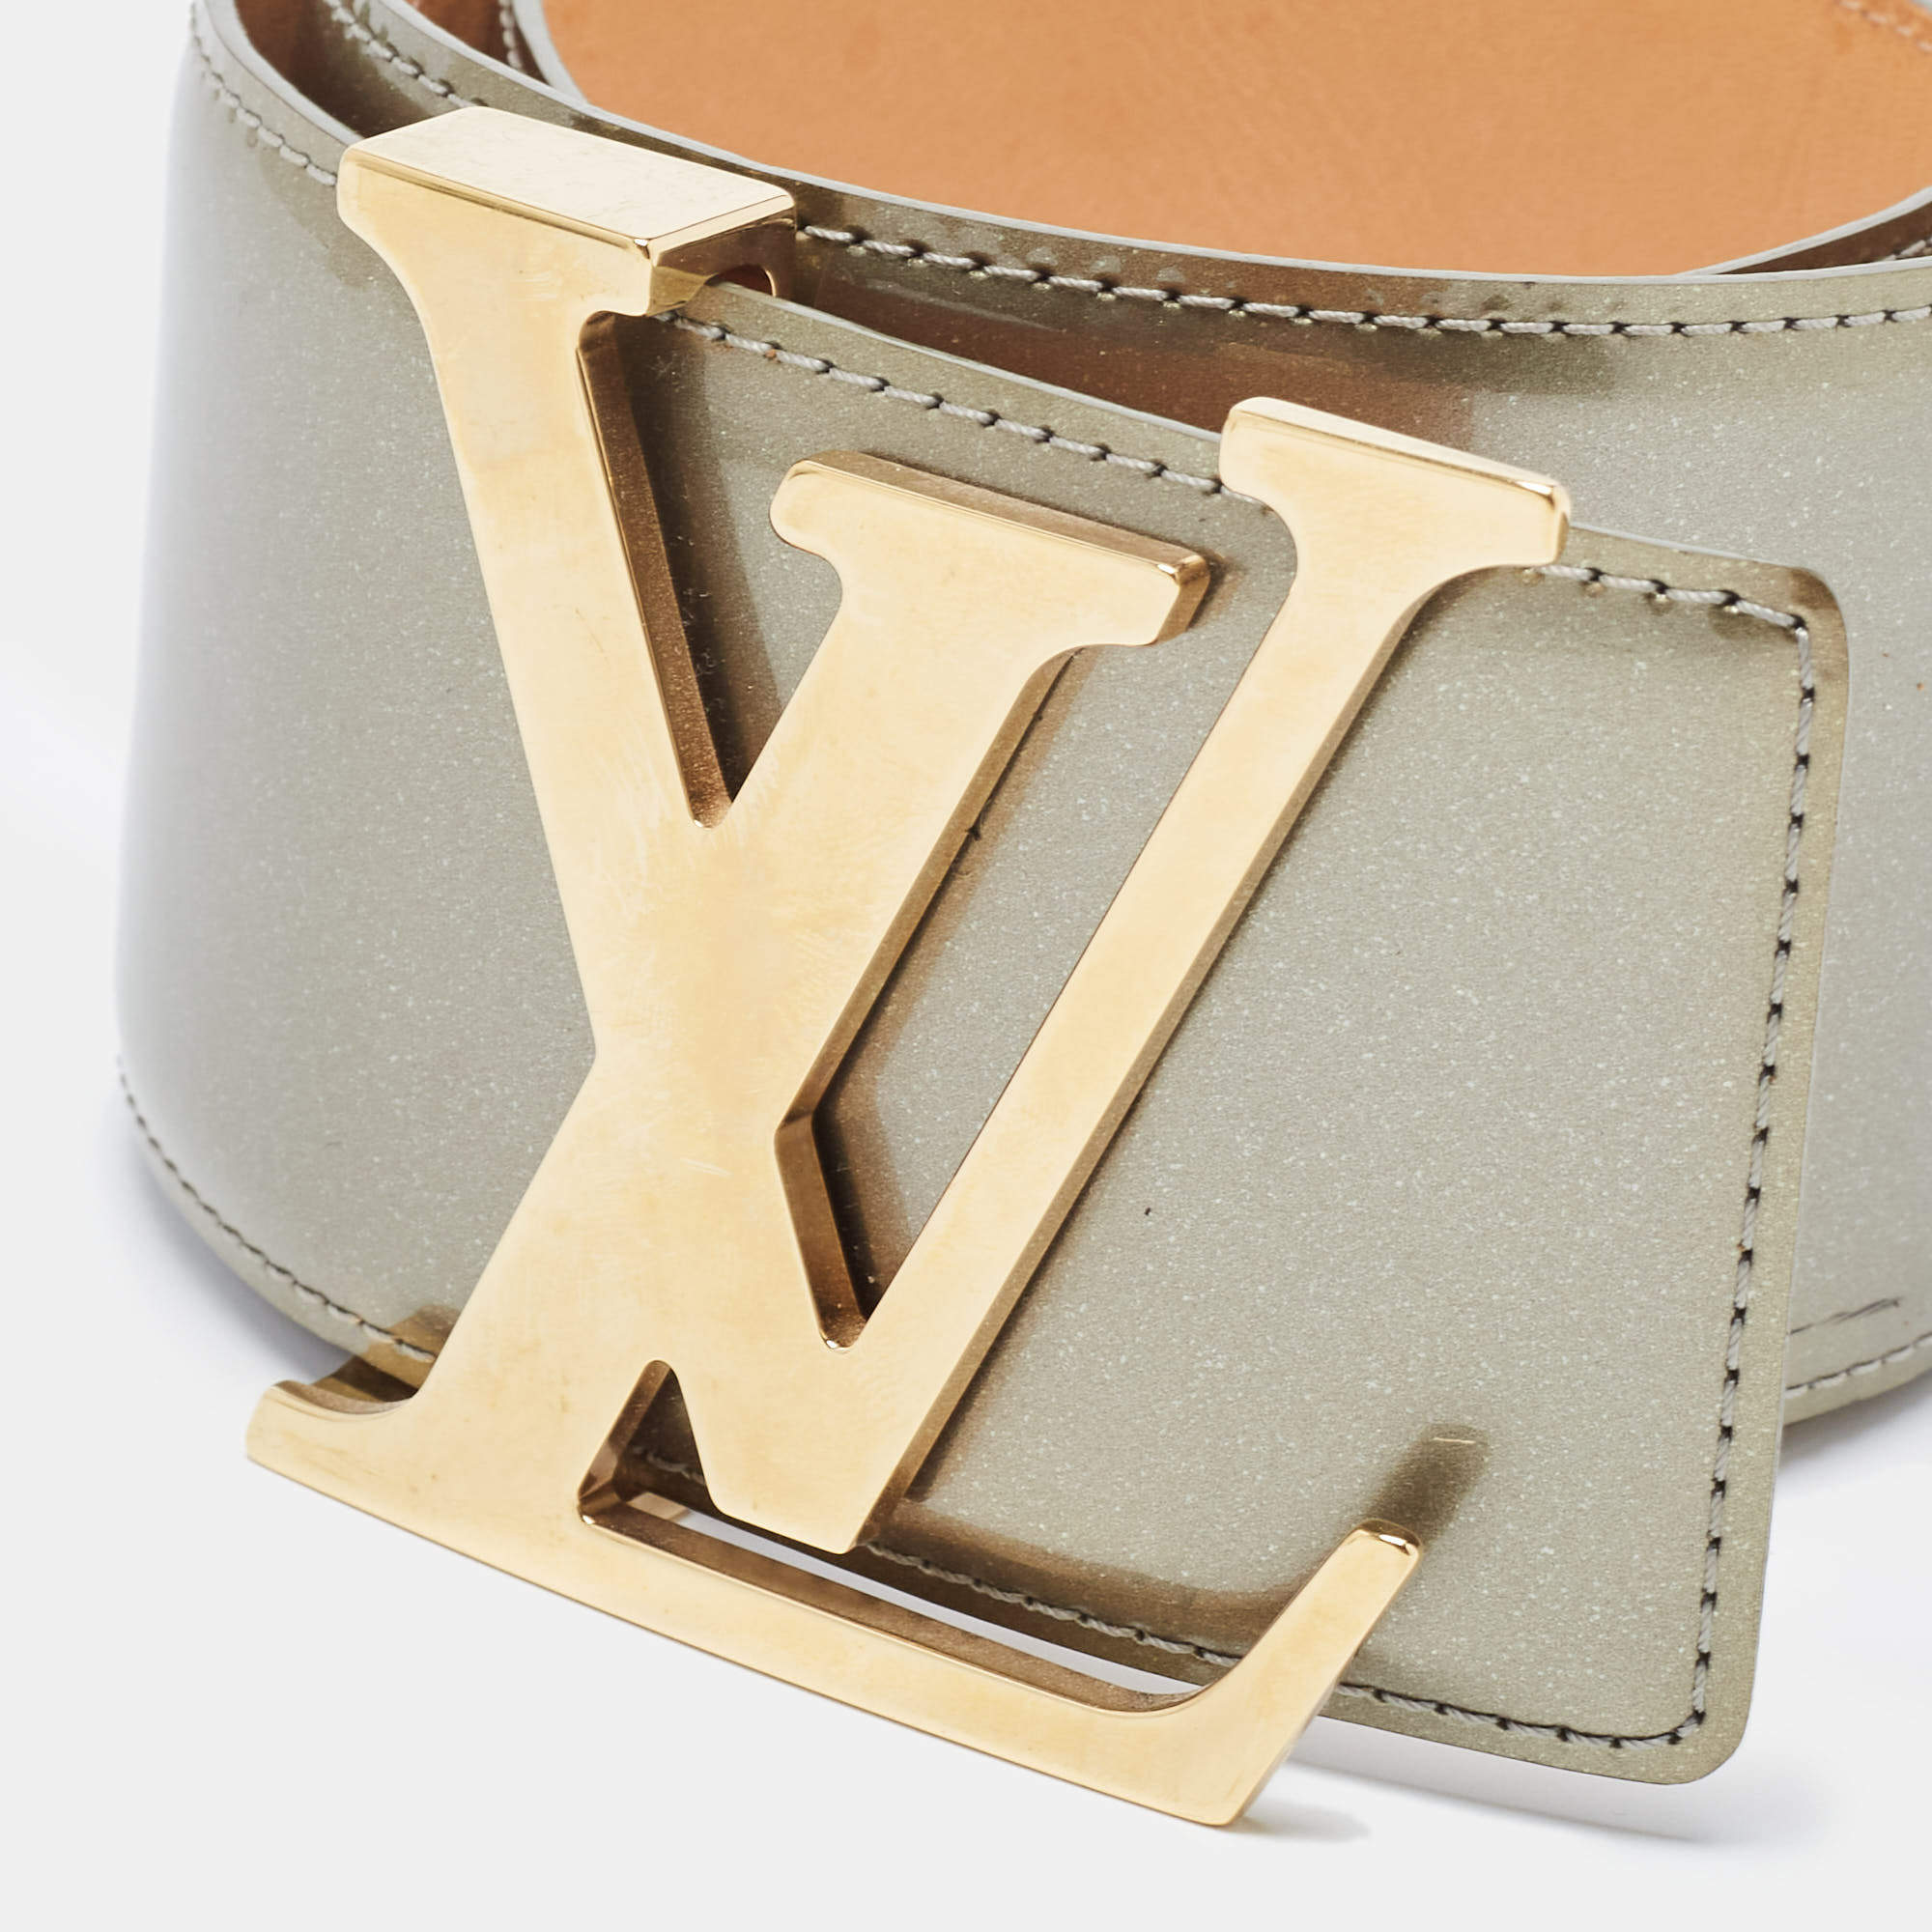 Lv circle belt Louis Vuitton Green size S International in Metal - 31729068